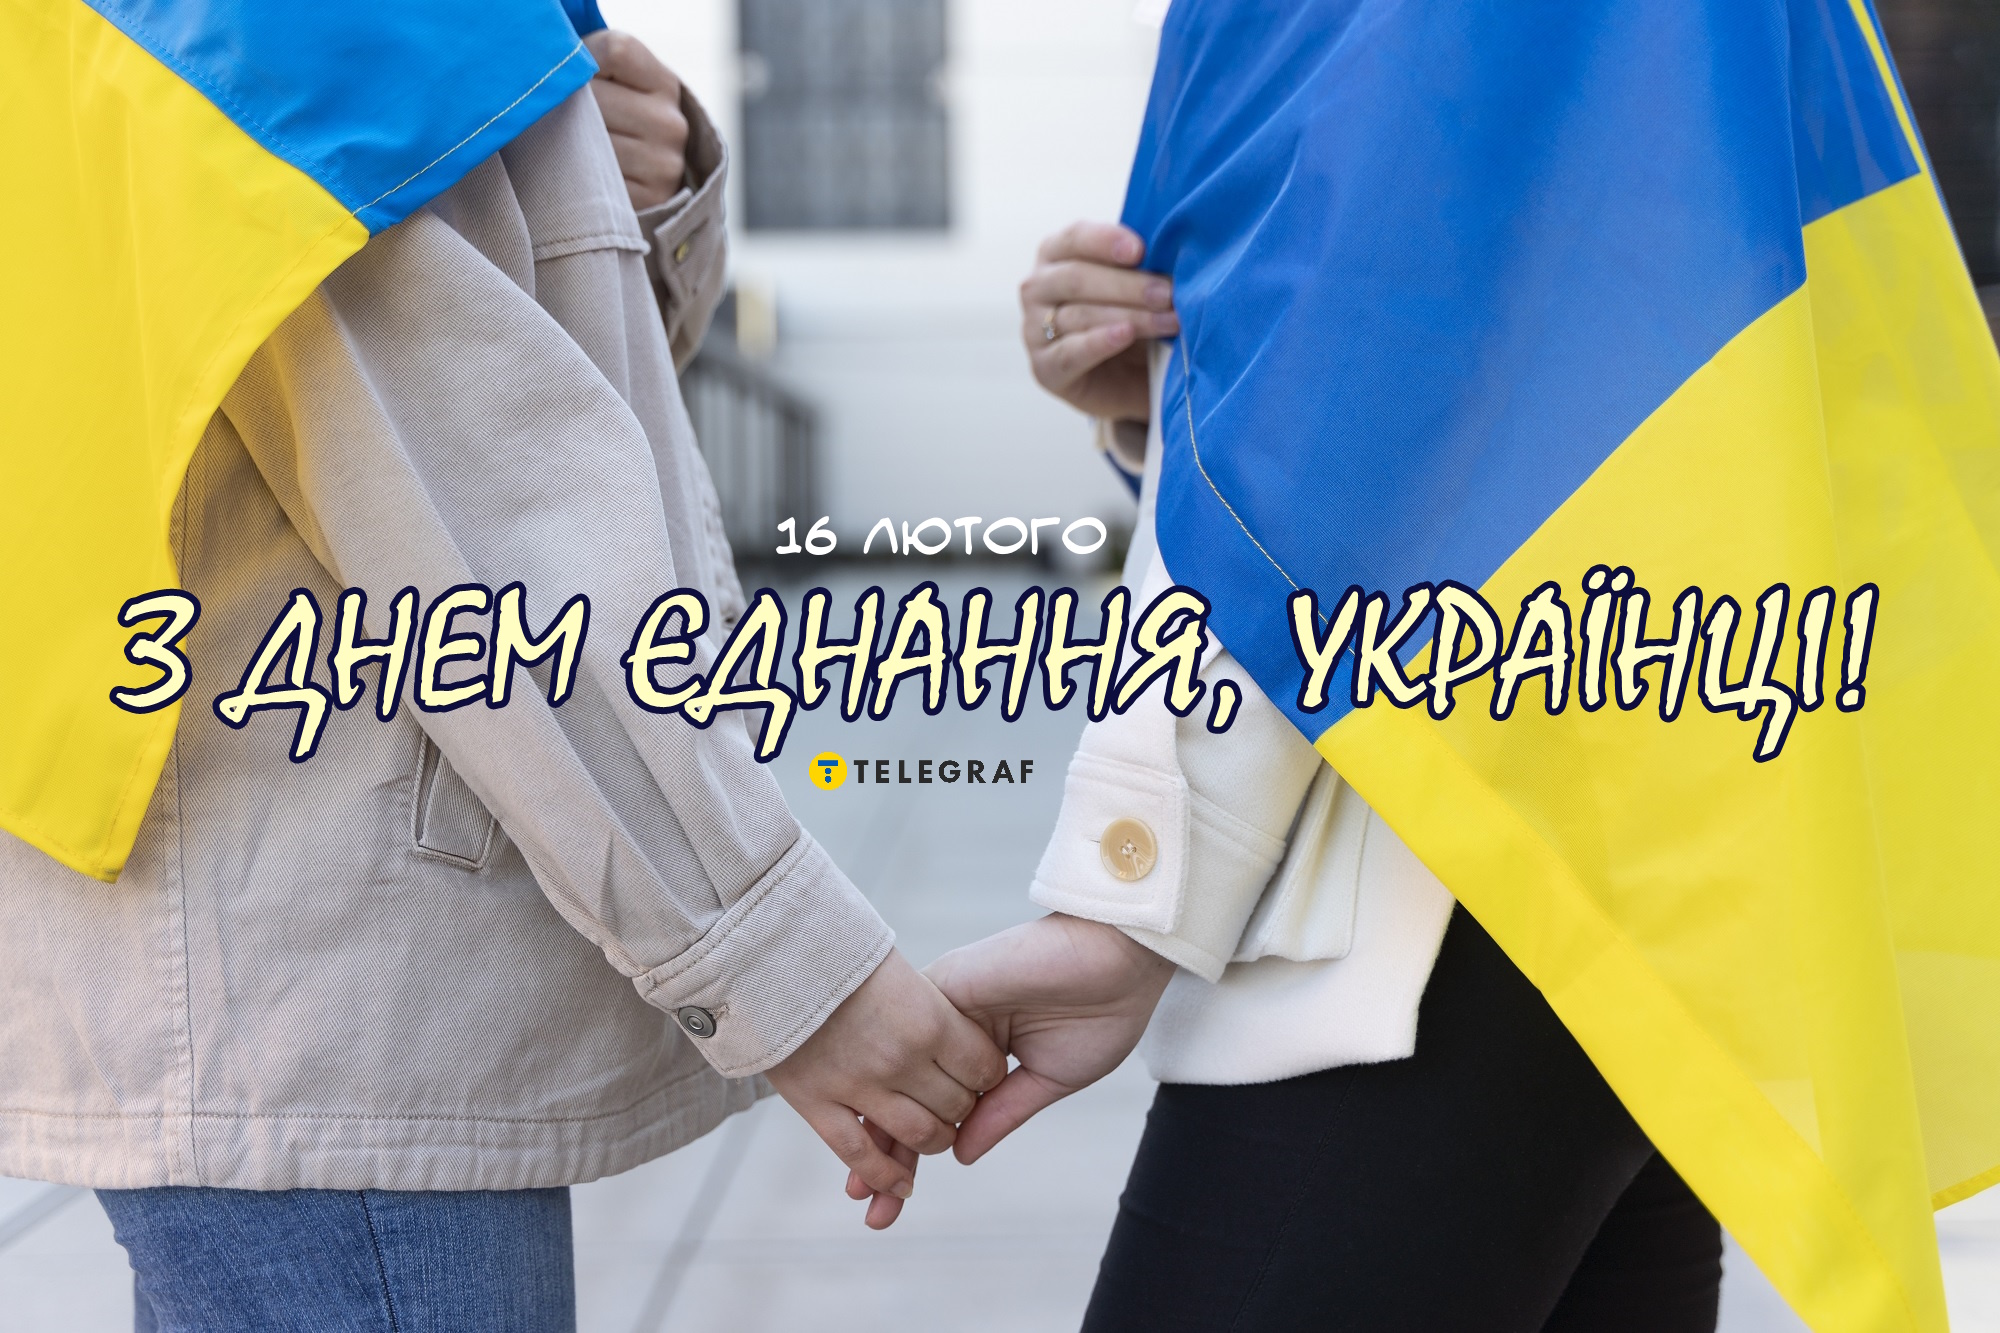 Открытка патриотическая. Открытки украина купить оптом Украина